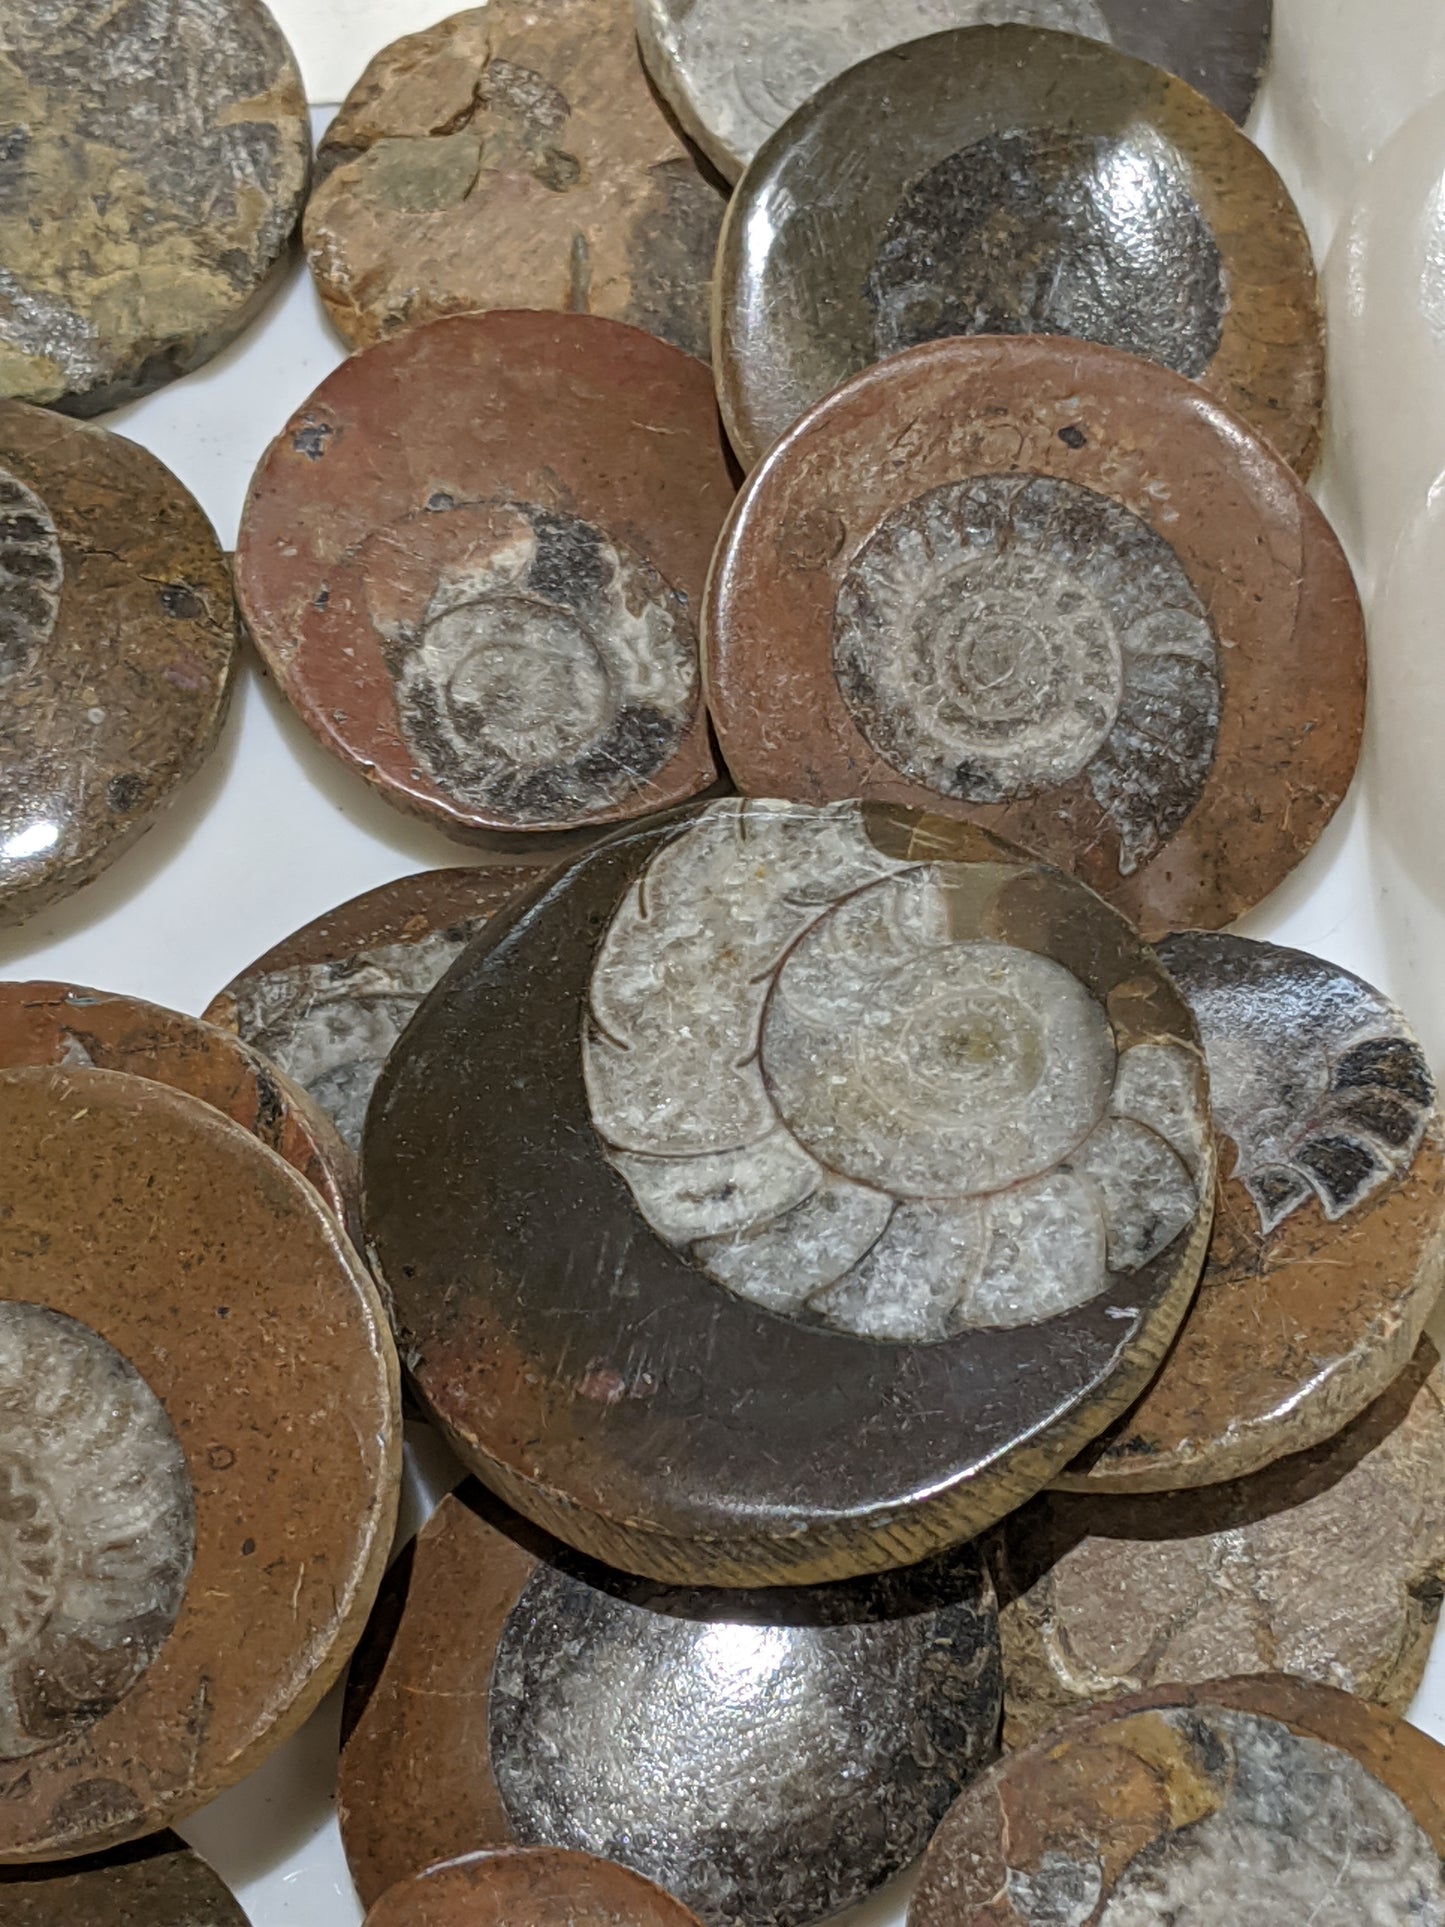 Ammonite button fossil